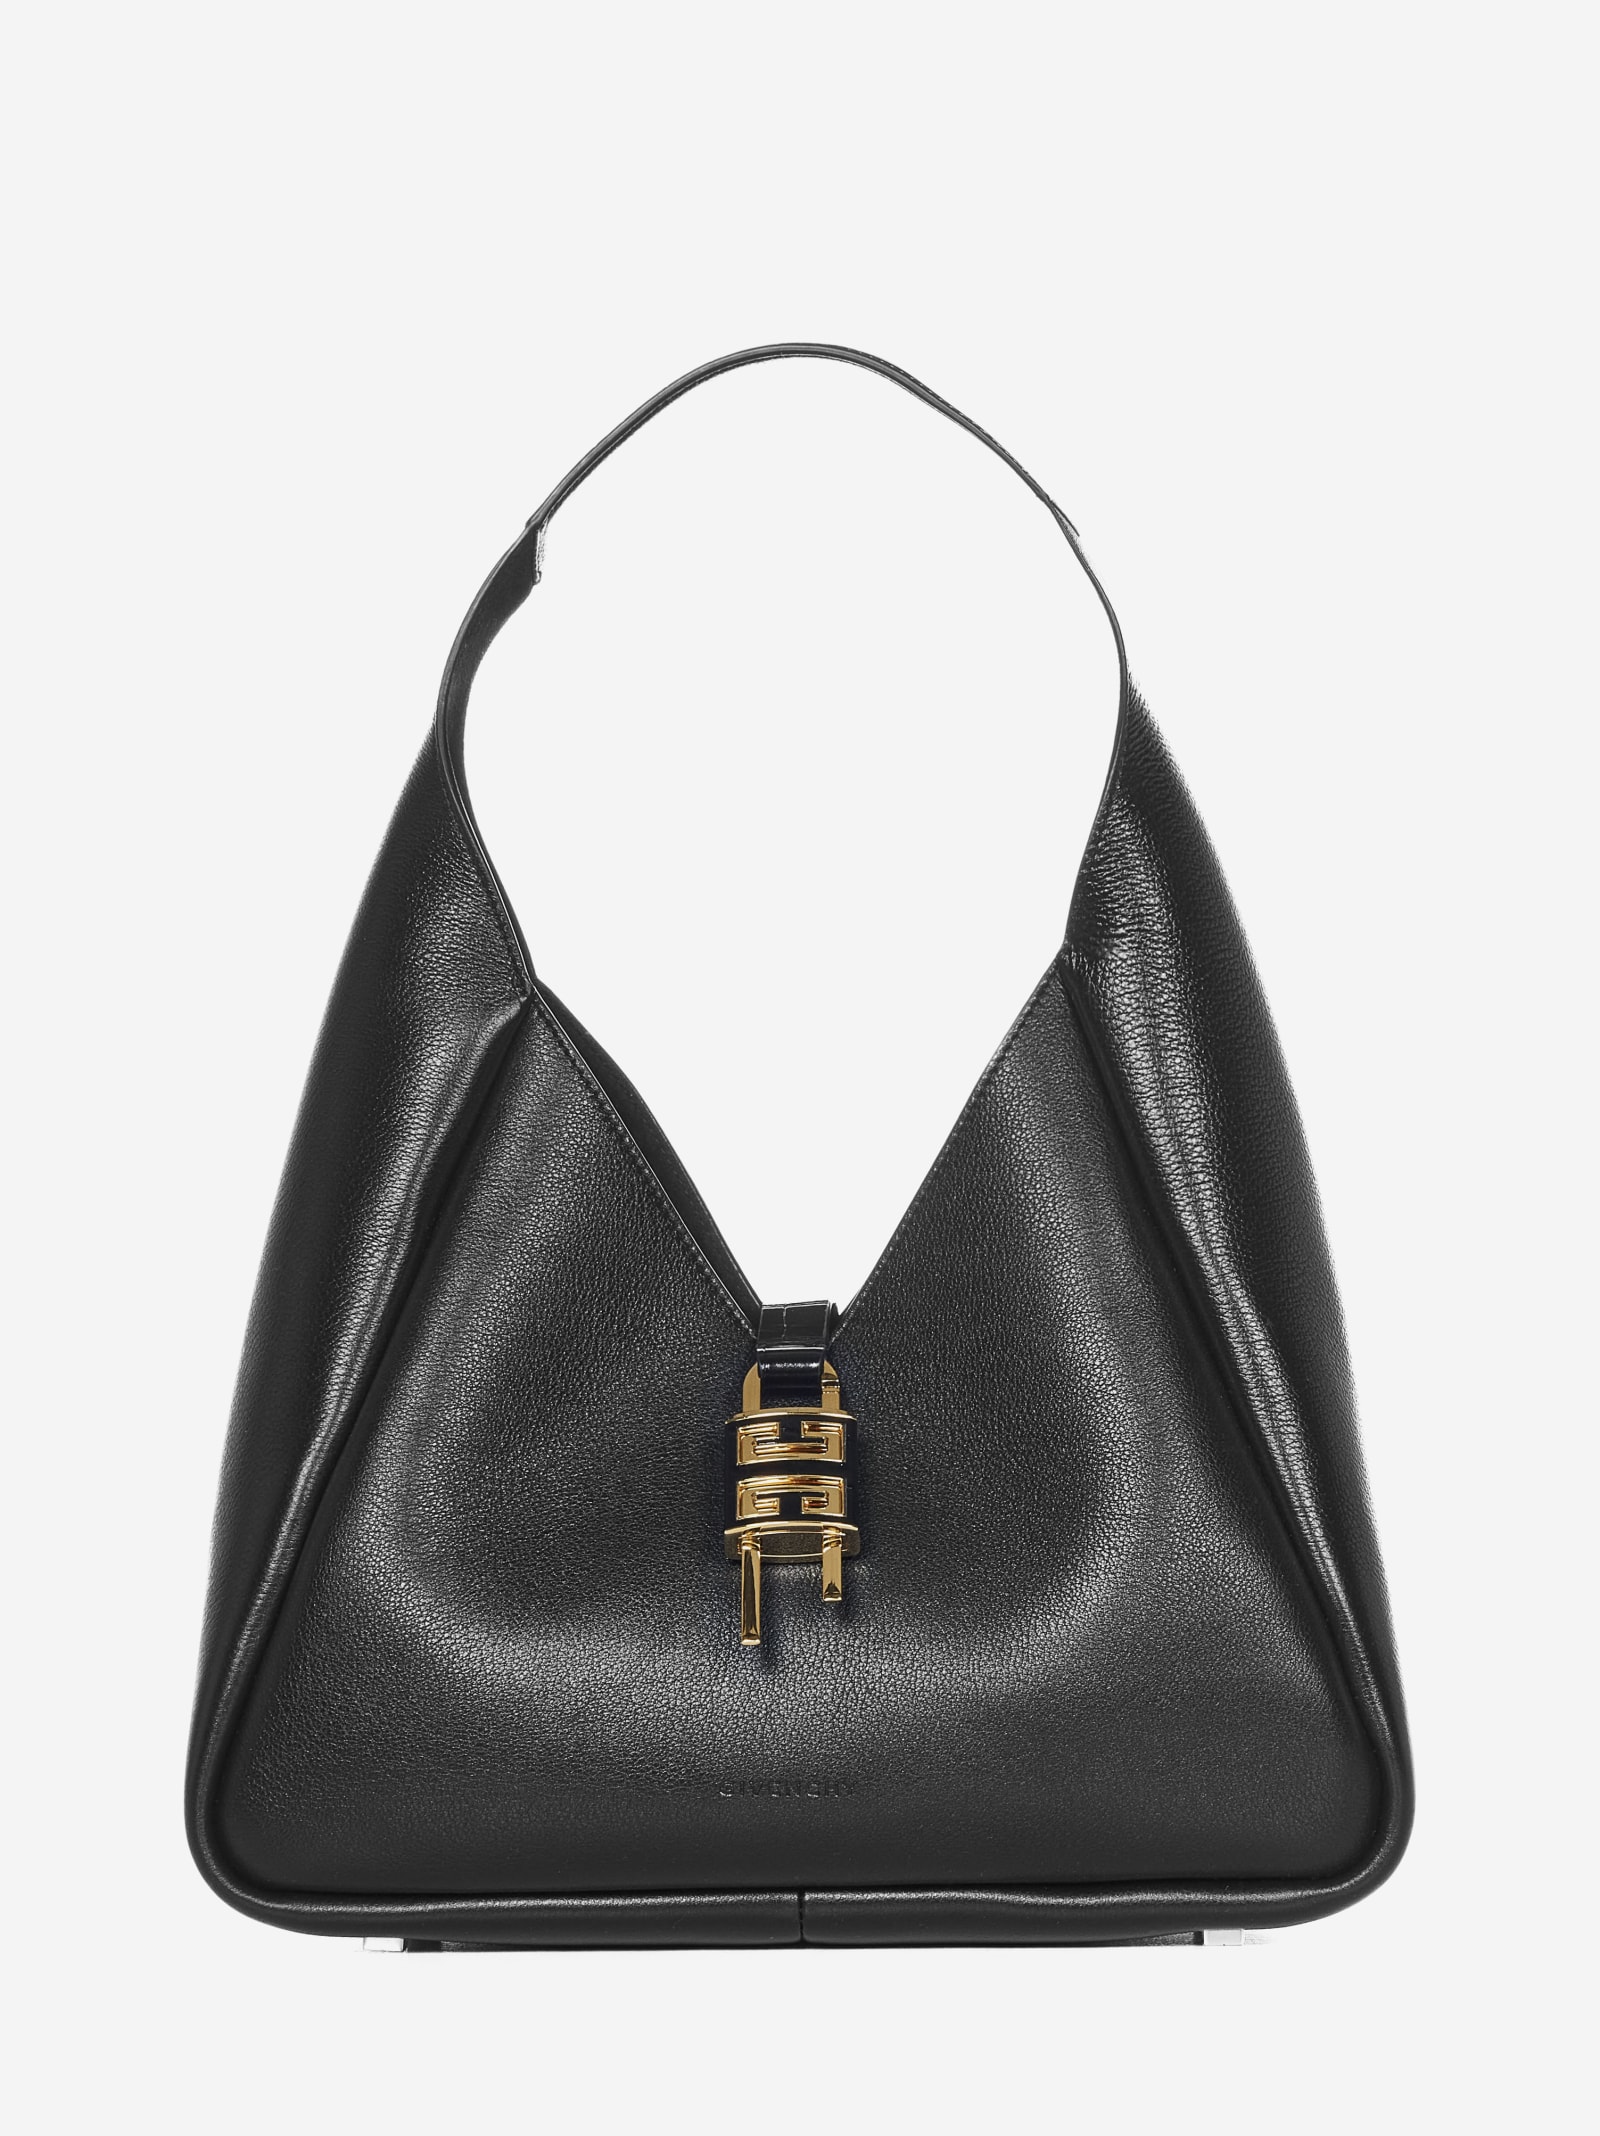 Givenchy Medium G-hobo Shoulder Bag